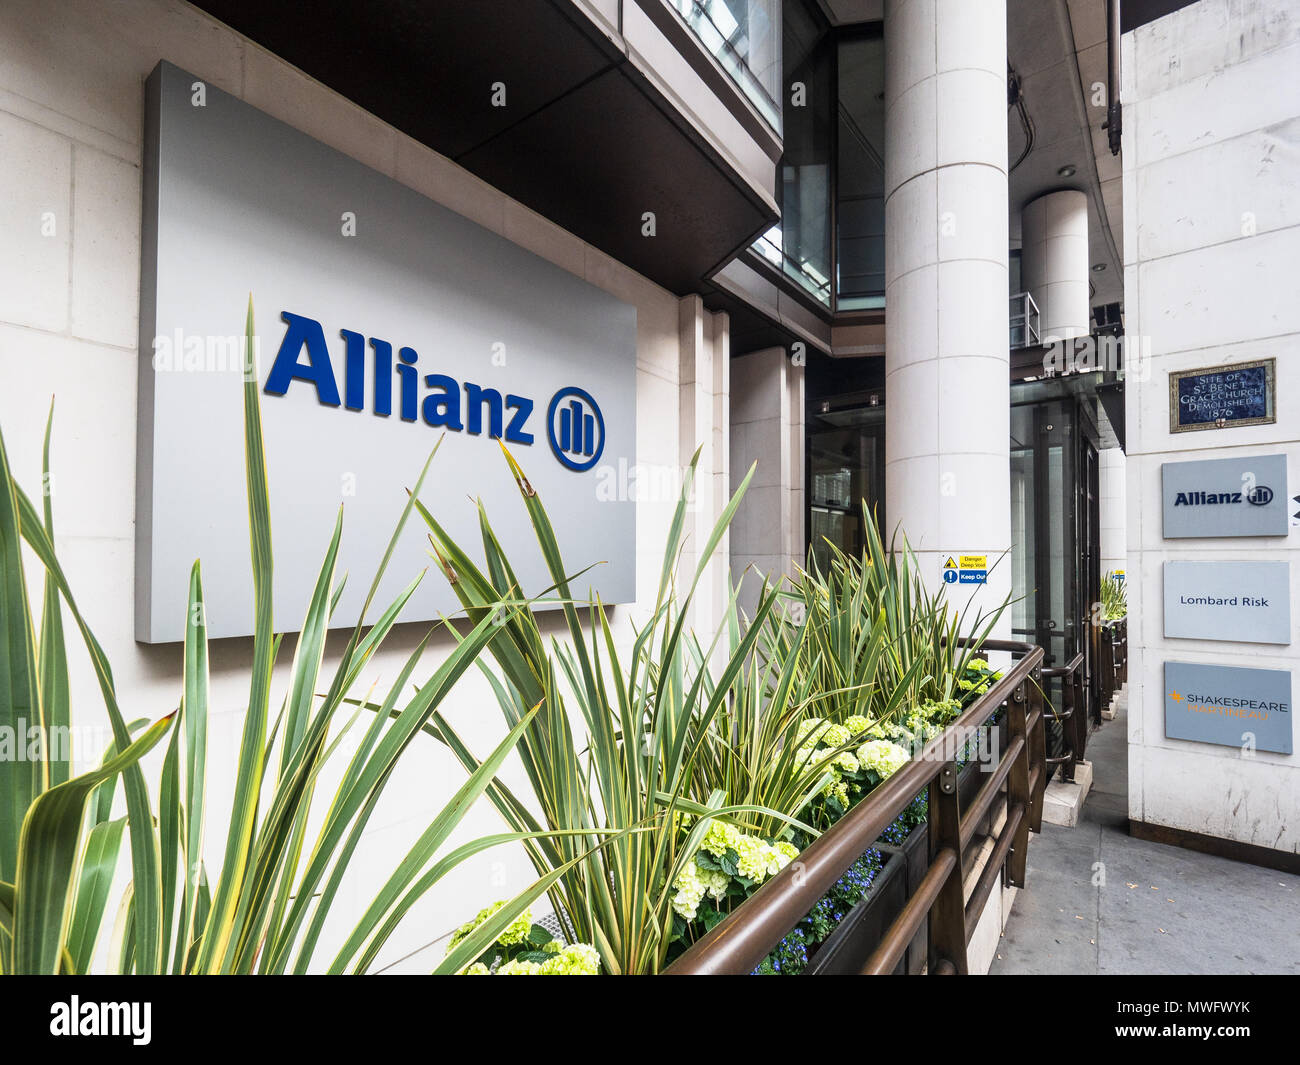 Allianz Insurance bureaux de Londres au 60 Gracechurch Street dans le quartier financier de la ville de Londres. Allianz Global Corporate & Specialty. Banque D'Images